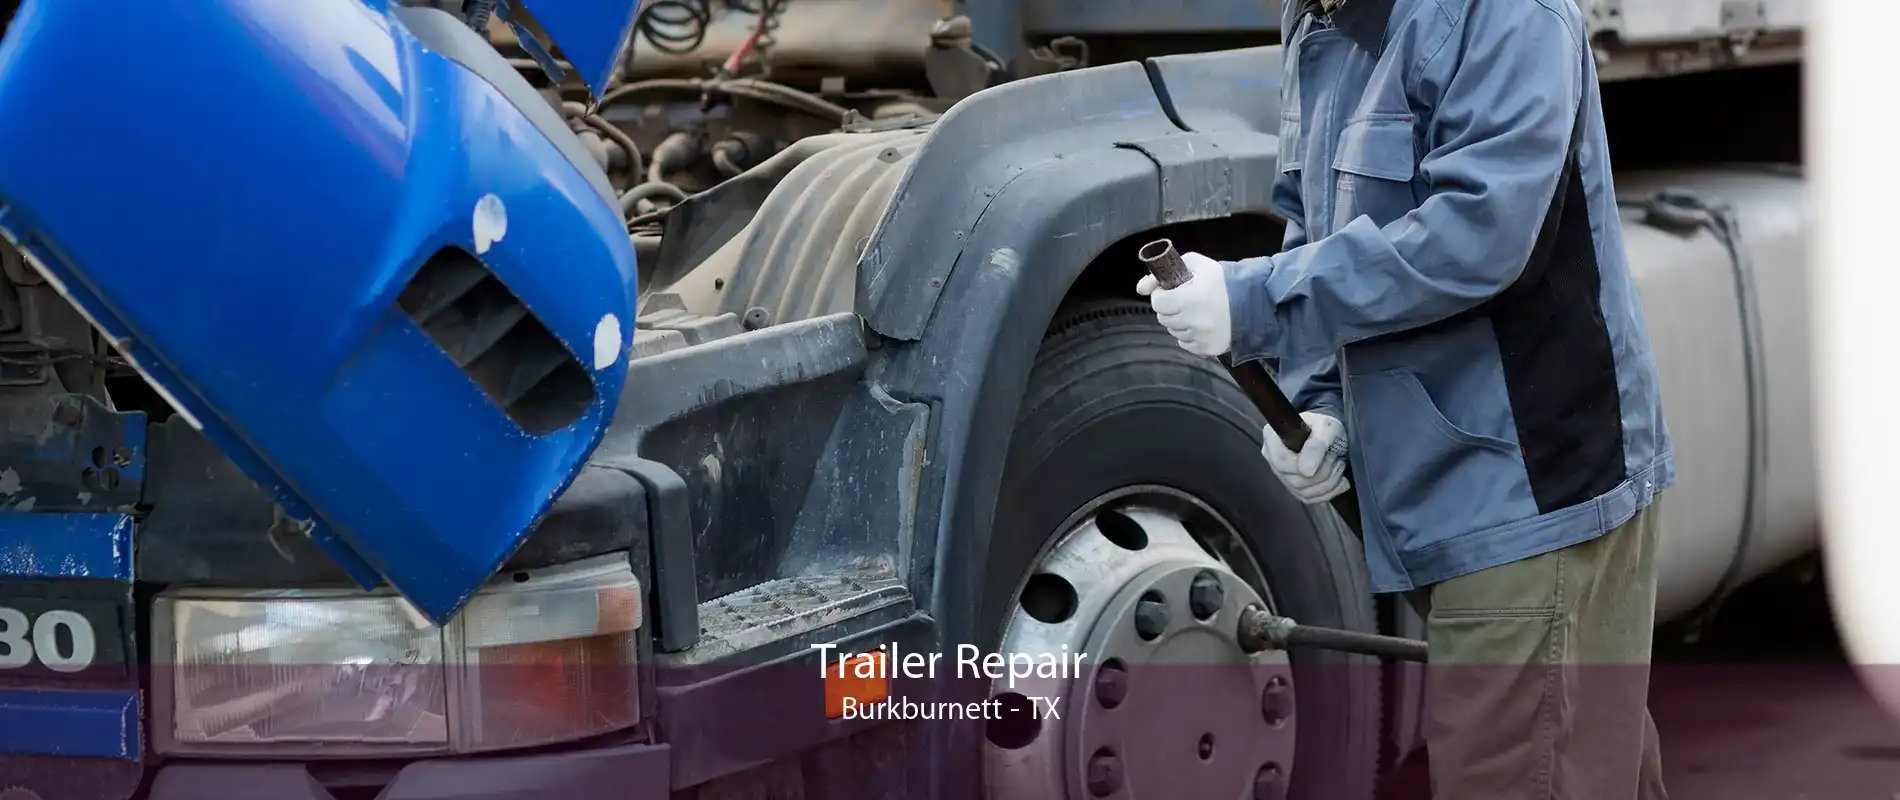 Trailer Repair Burkburnett - TX